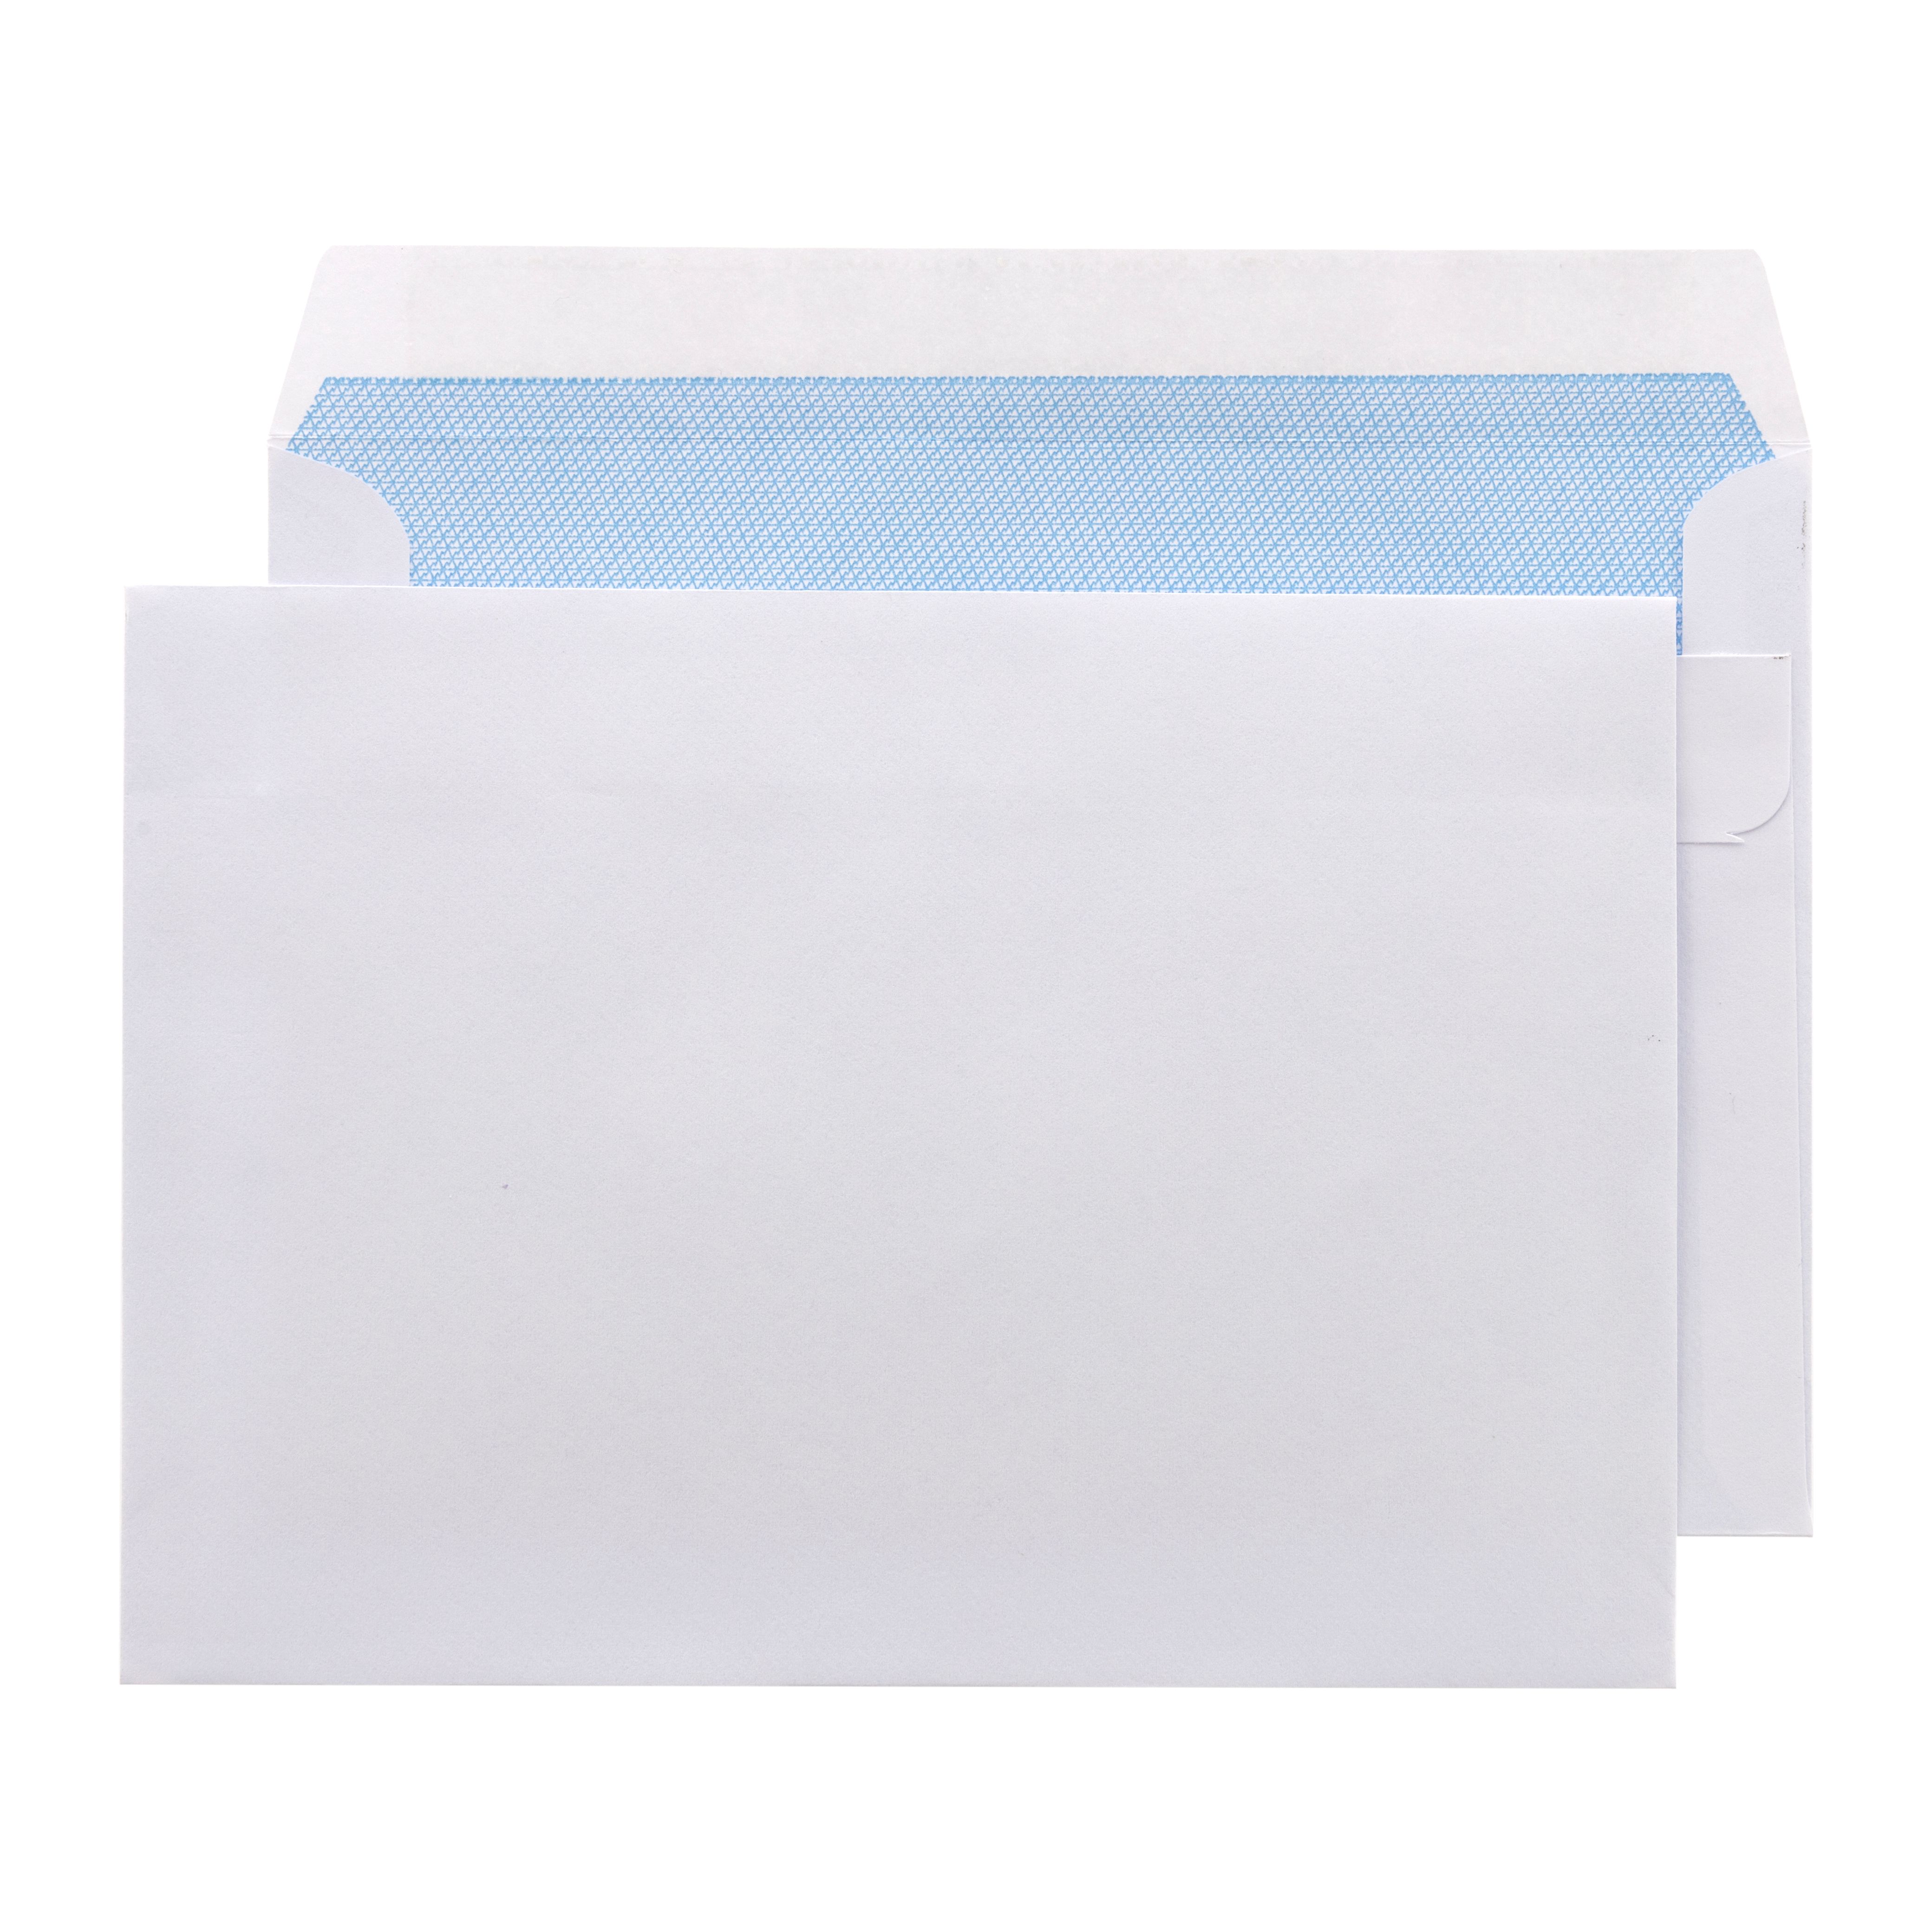 Envelopes Other